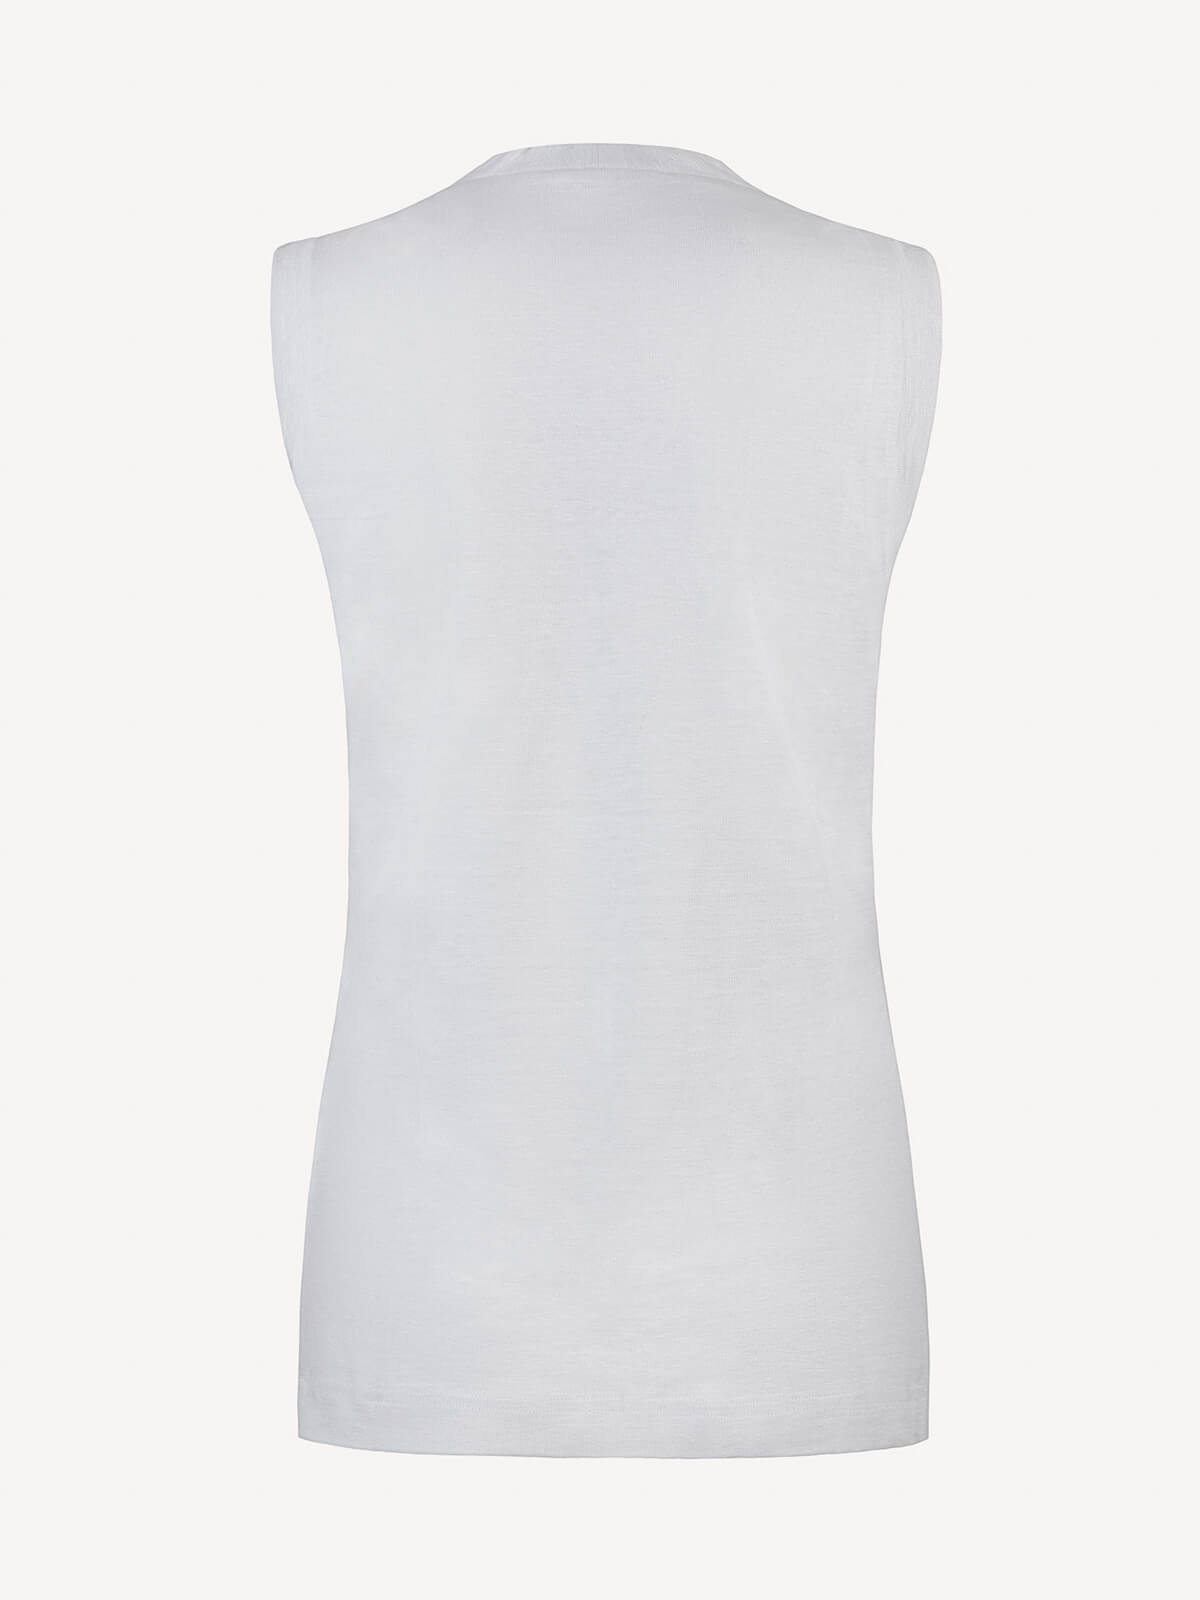 Top V for woman 100% Capri white linen top back